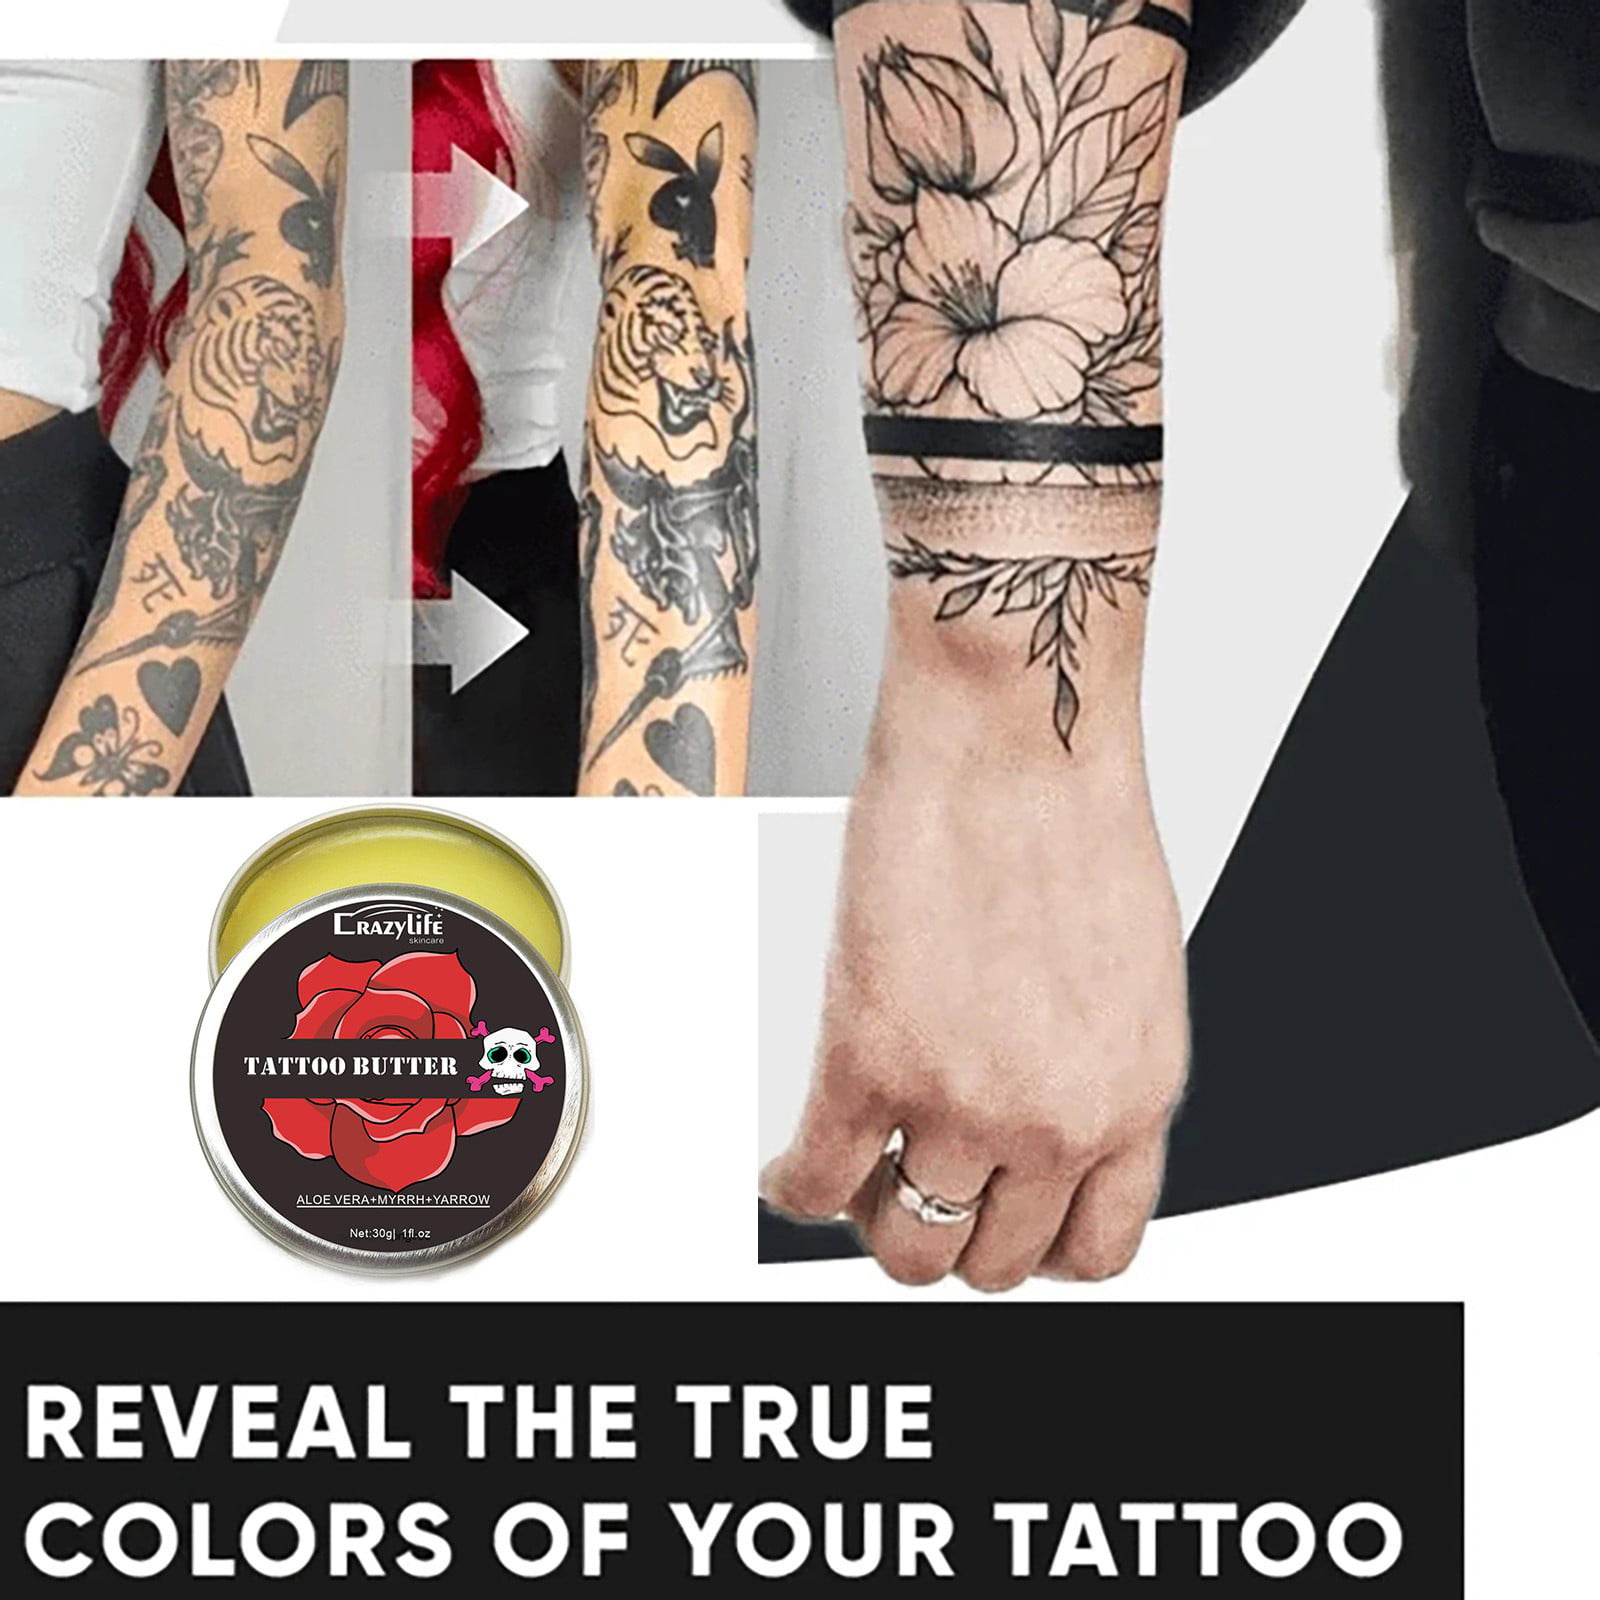 BRUT Tattoo Care Lotion 3.5OZ - Walmart.com